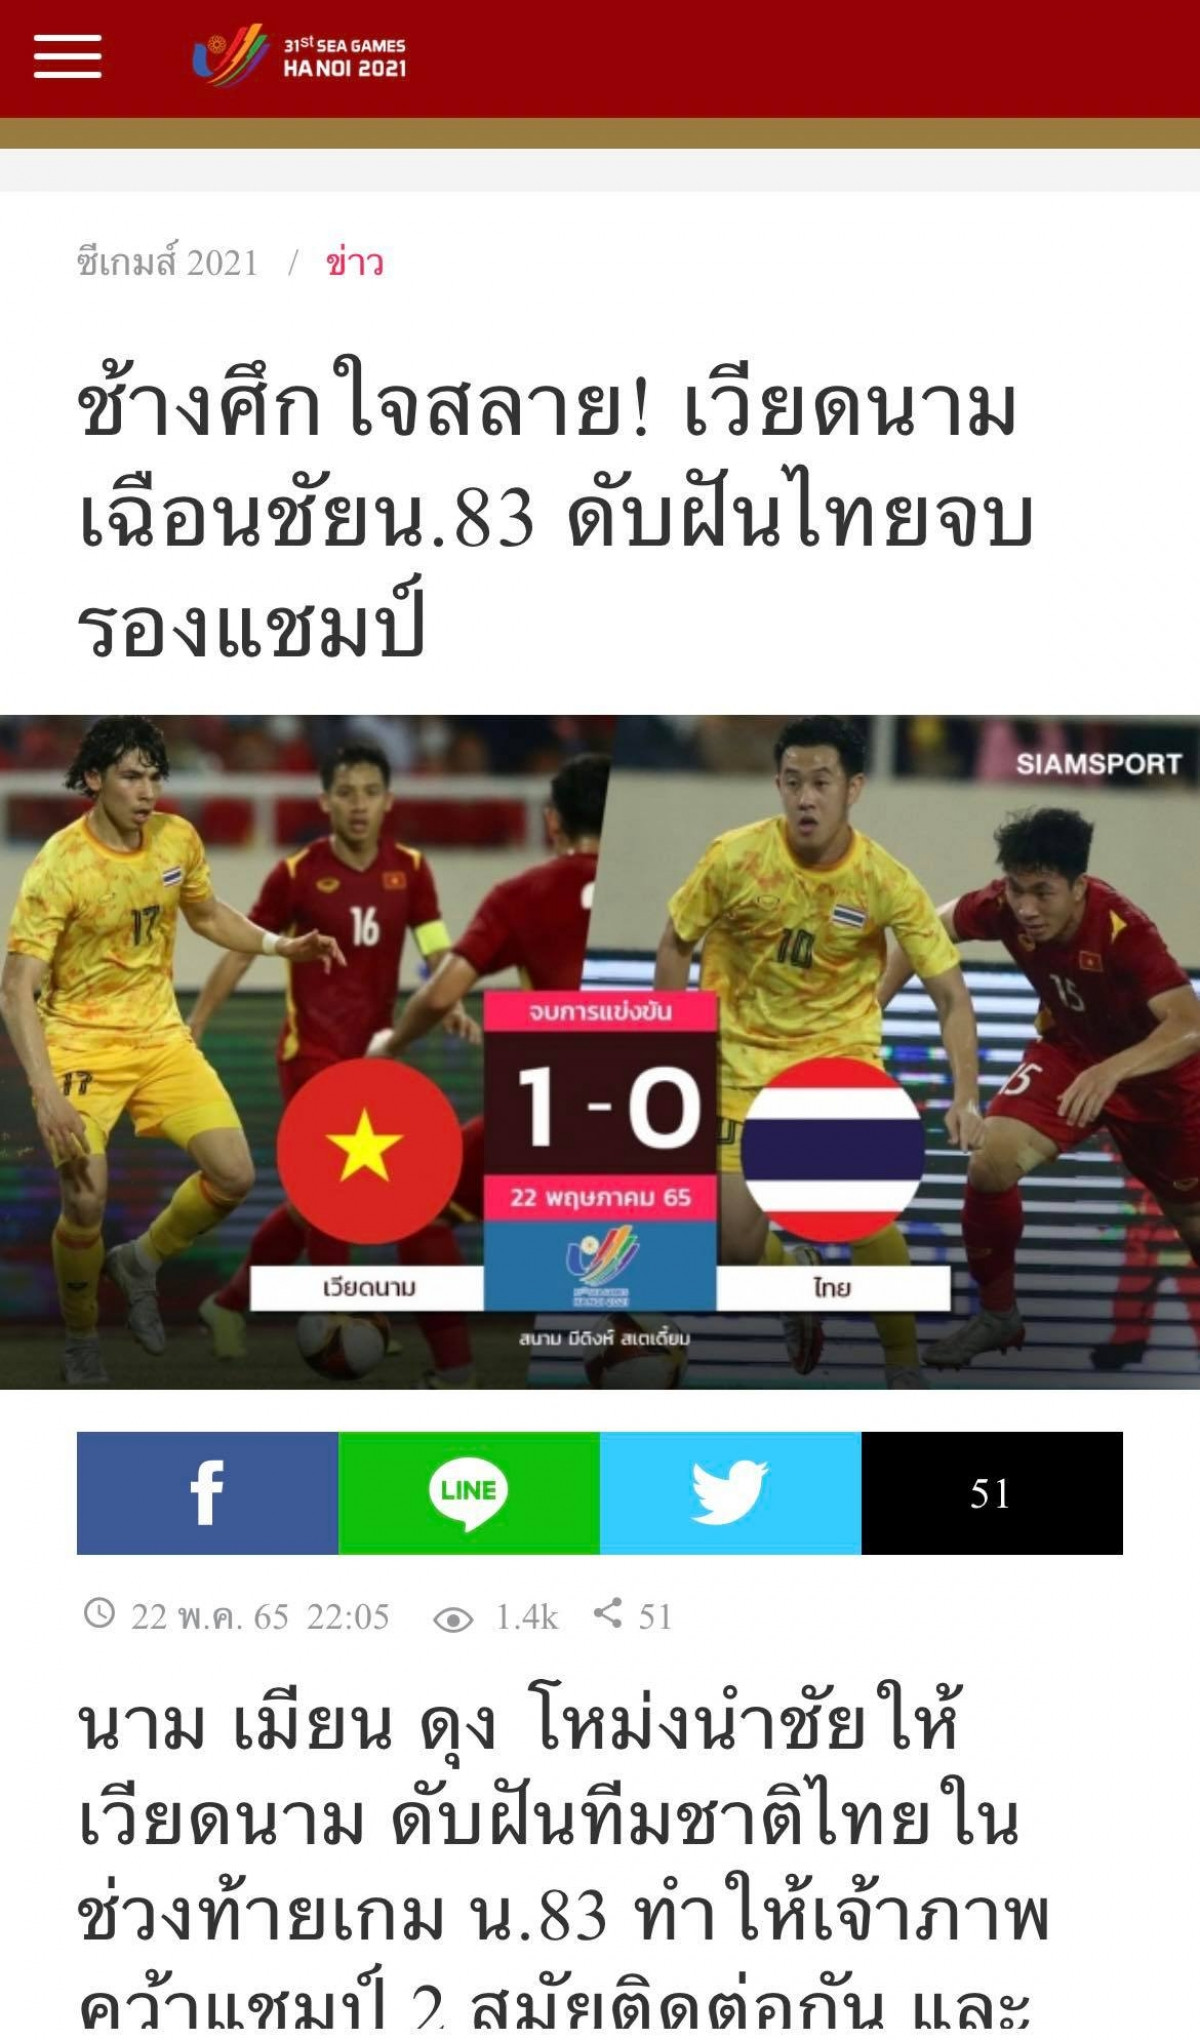 Trang Siam Sports